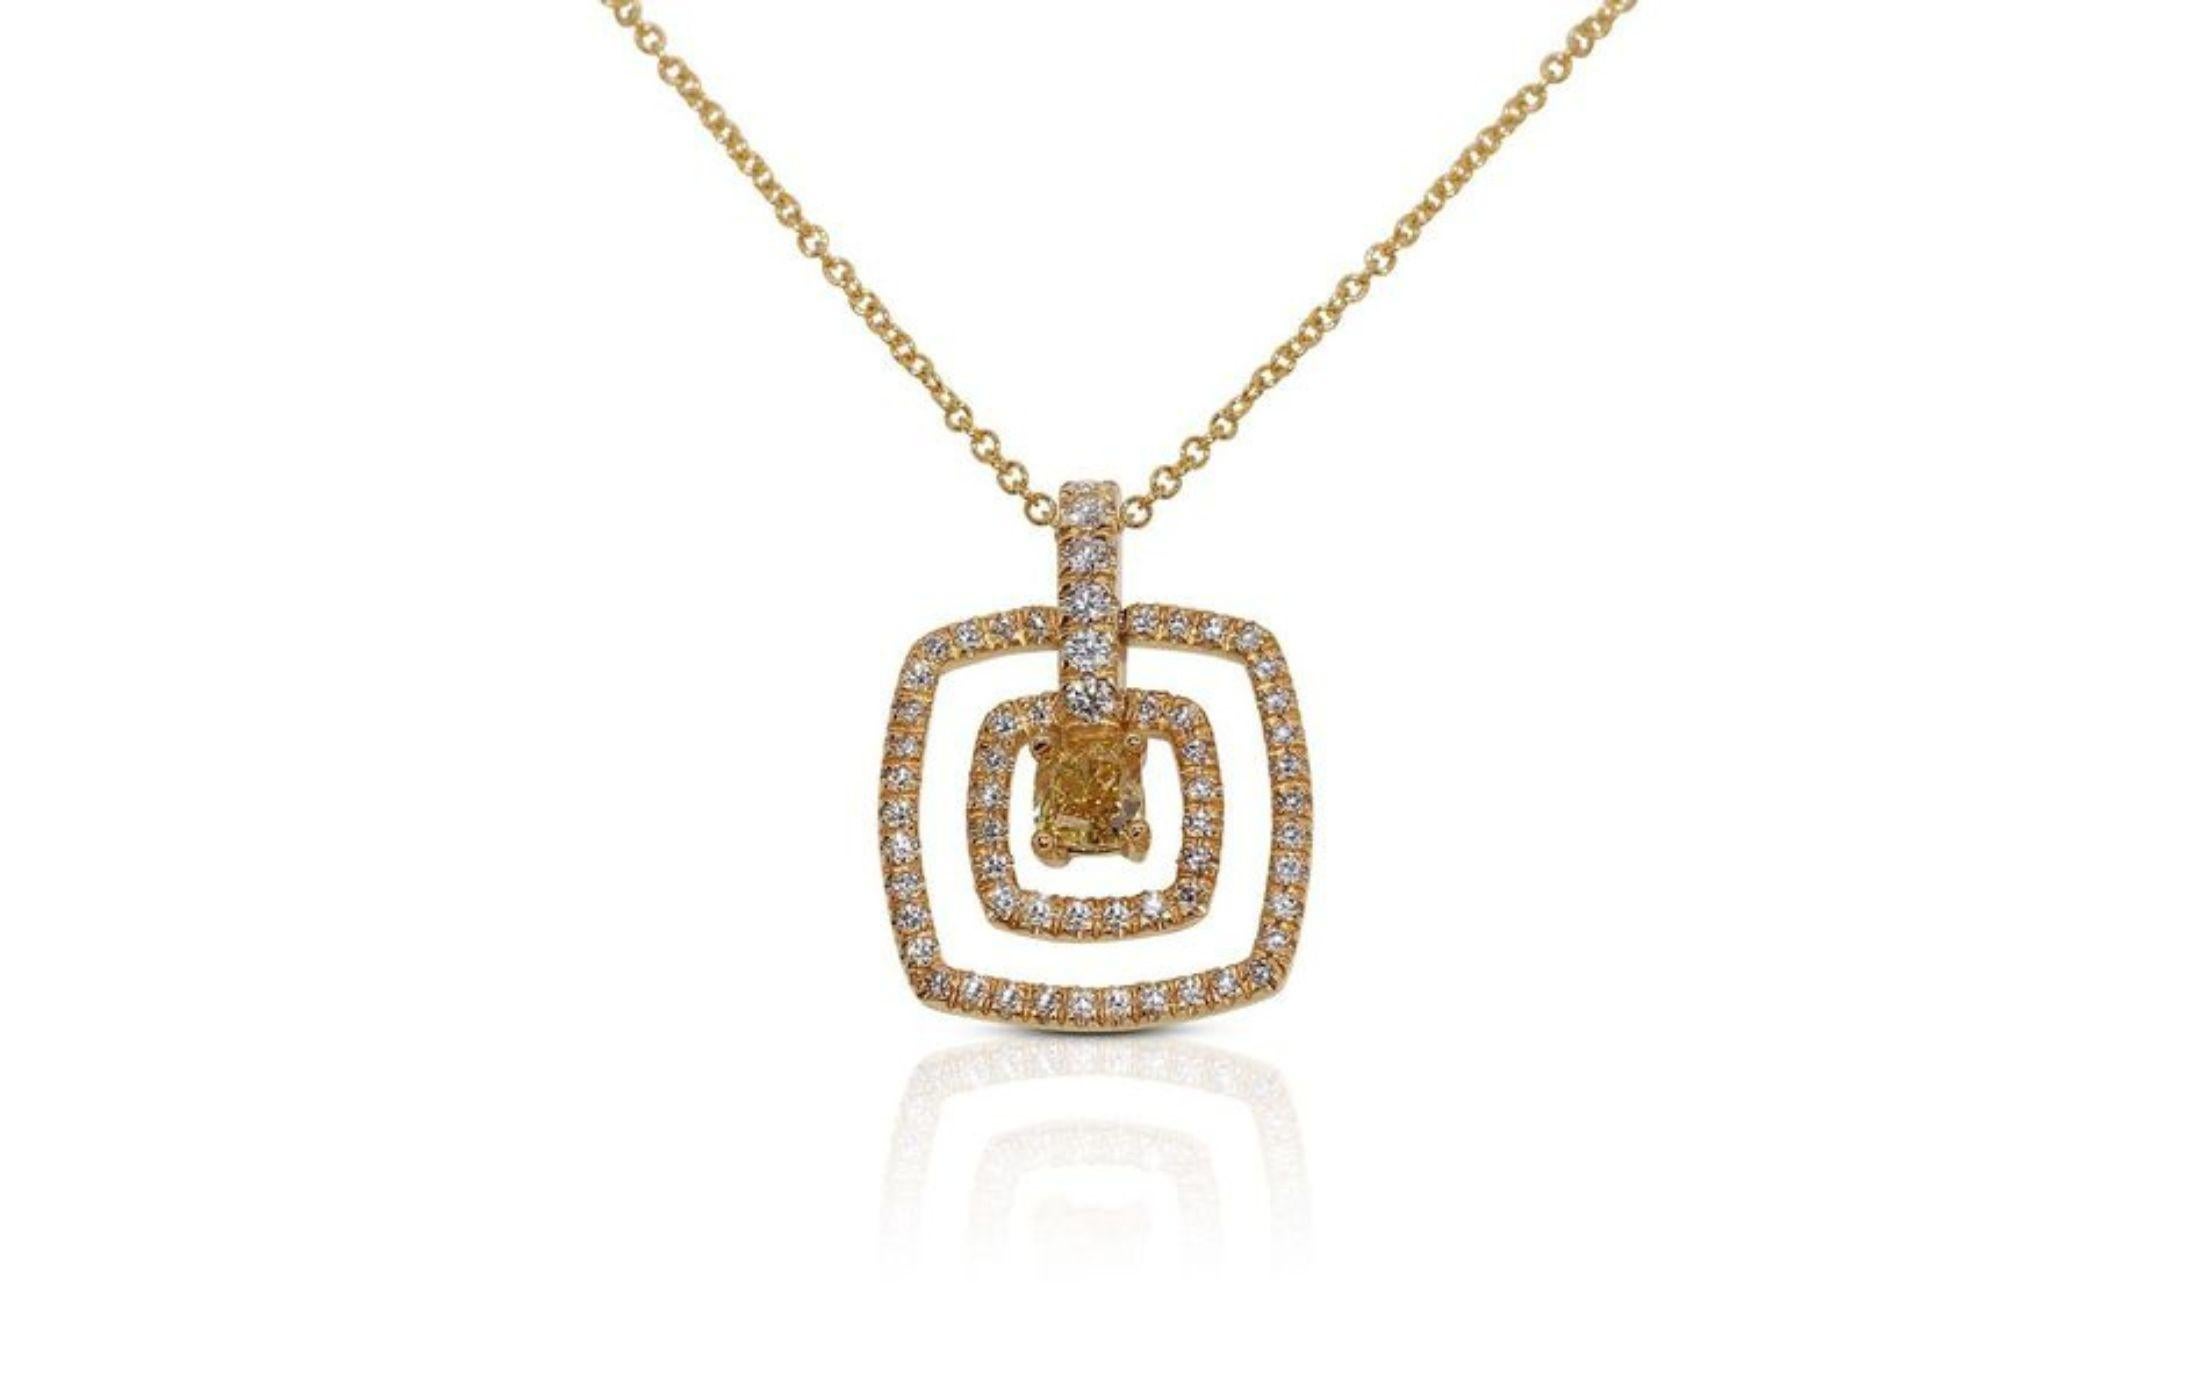 La chaîne du collier, réalisée en or jaune 18 carats, ajoute une touche chaleureuse et luxueuse à la pièce. Les détails complexes de l'orfèvrerie rehaussent l'ensemble du design, créant un flux fluide et délicat qui complète l'éclat du diamant. Le